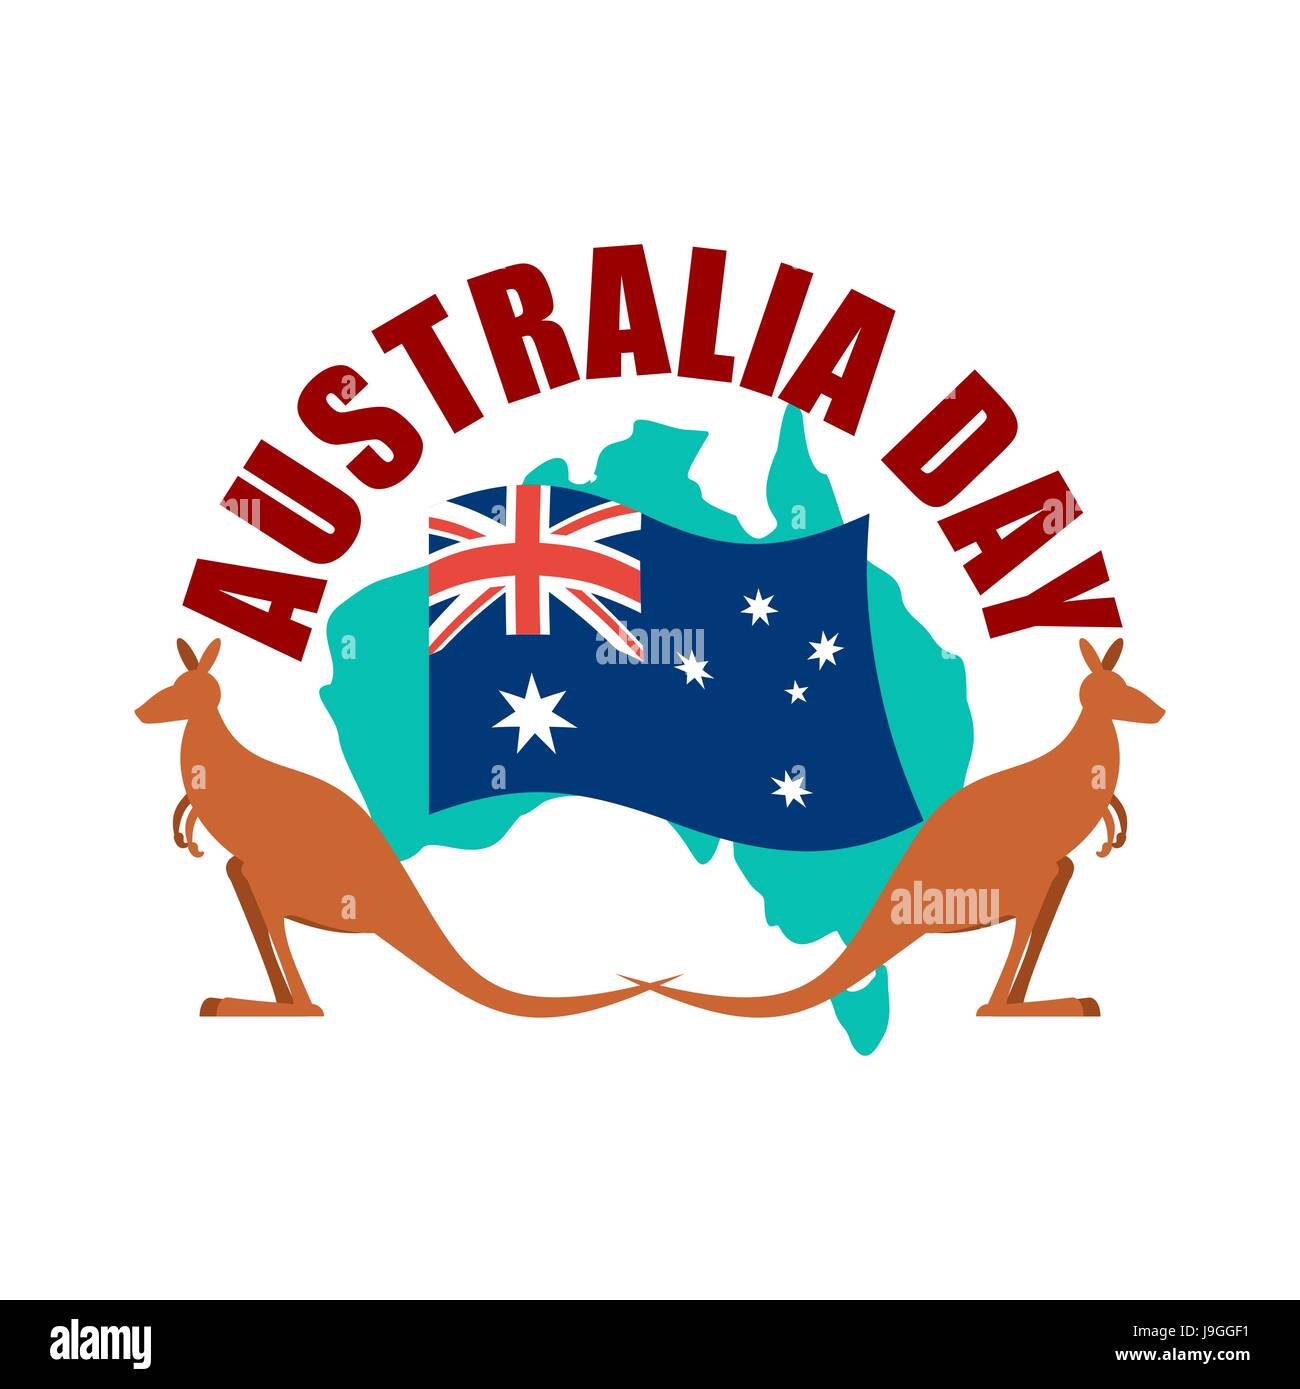 Emblema del Día de Australia. Kangaroo bandera australiana y el mapa. Ilustración del Vector